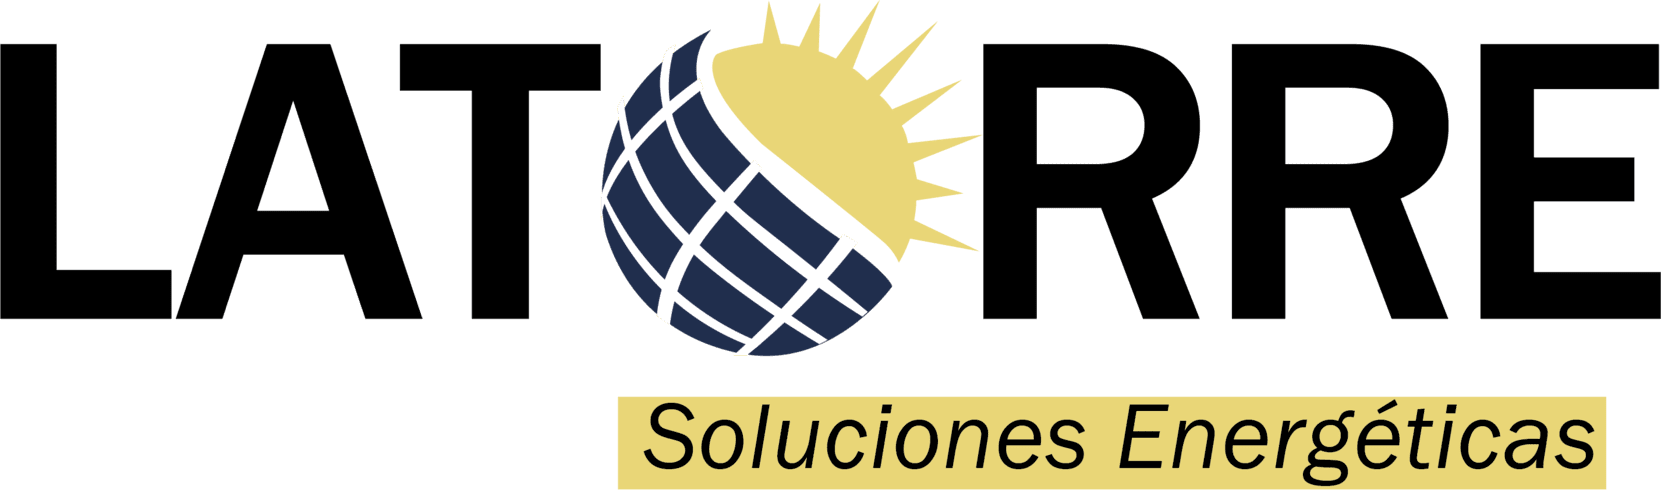 LaTorre Soluciones Energéticas logo